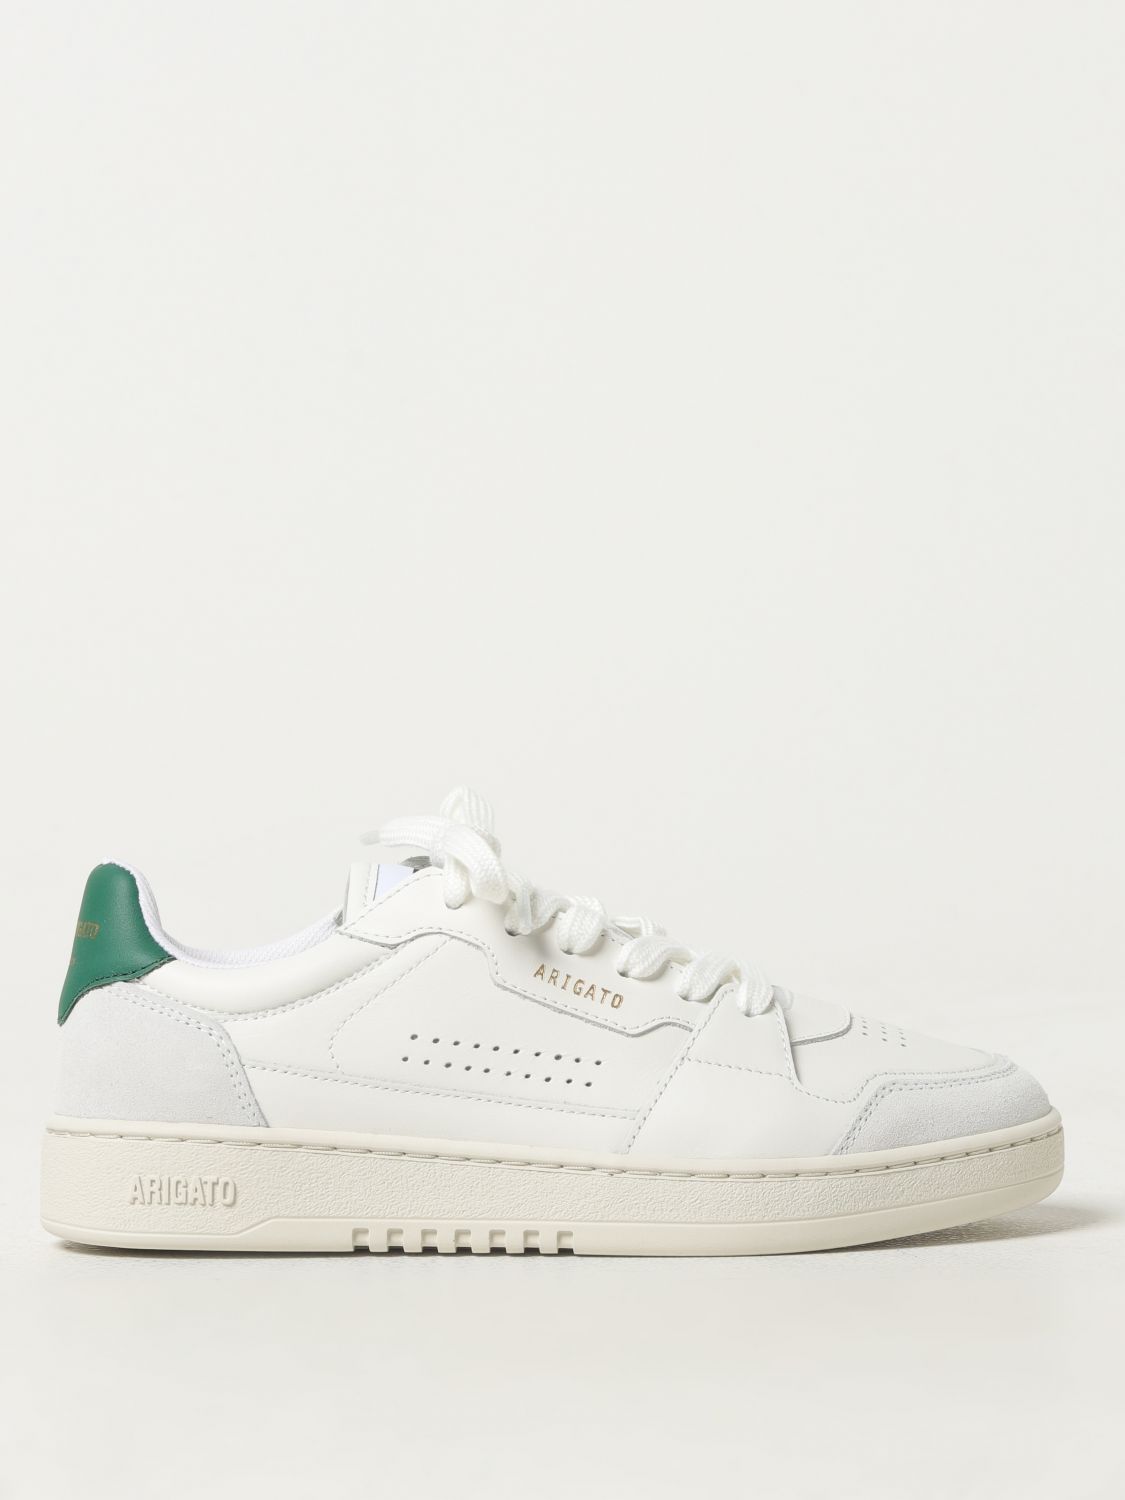 Axel Arigato Dice Lo Sneaker -  - Leather - White/green